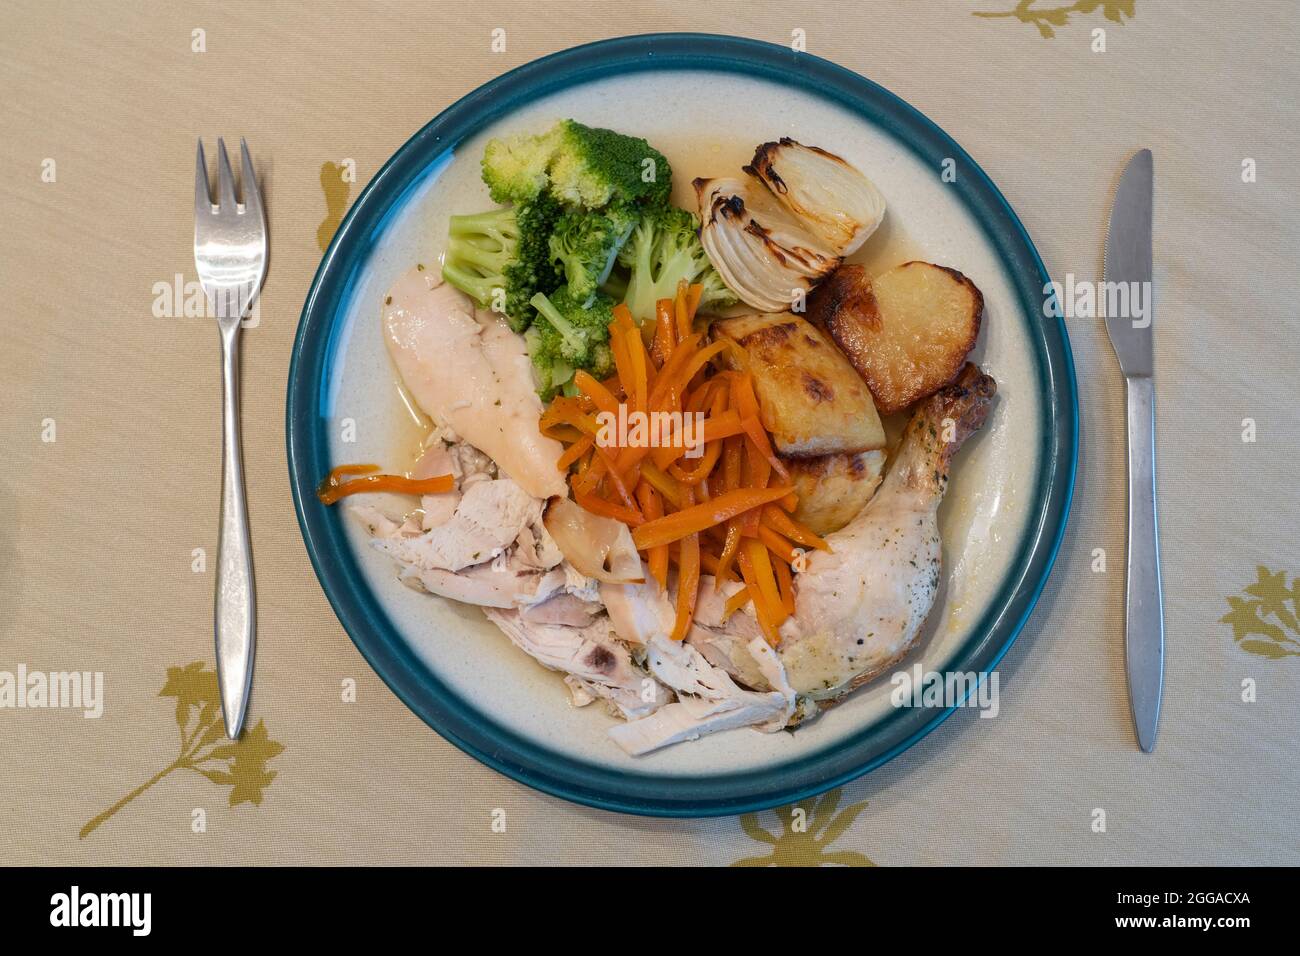 Ein vertikaler Blick auf ein typisch englisches Abendessen am Sonntag mit gebratenem Huhn, gebratenen Zwiebeln und Gemüse auf einem porzellanplatte mit Besteck Stockfoto